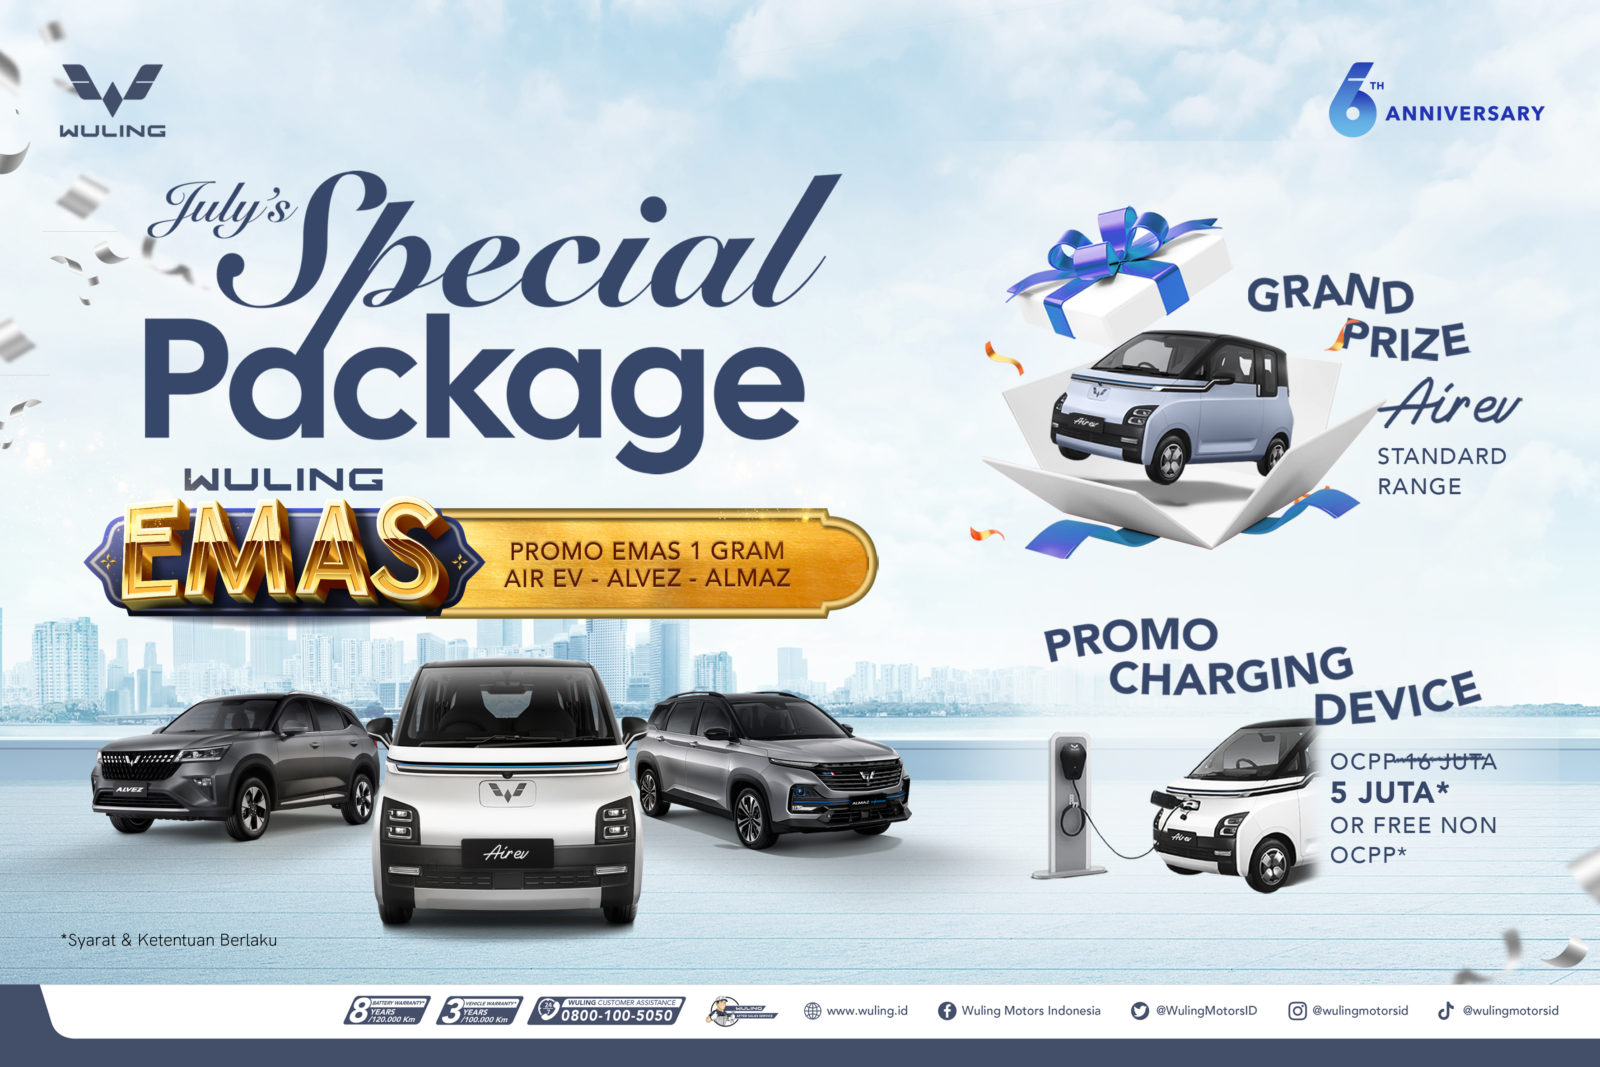 Image Wuling ‘July’s Special Package’, Program Pembelian Berhadiah Emas dan Mobil